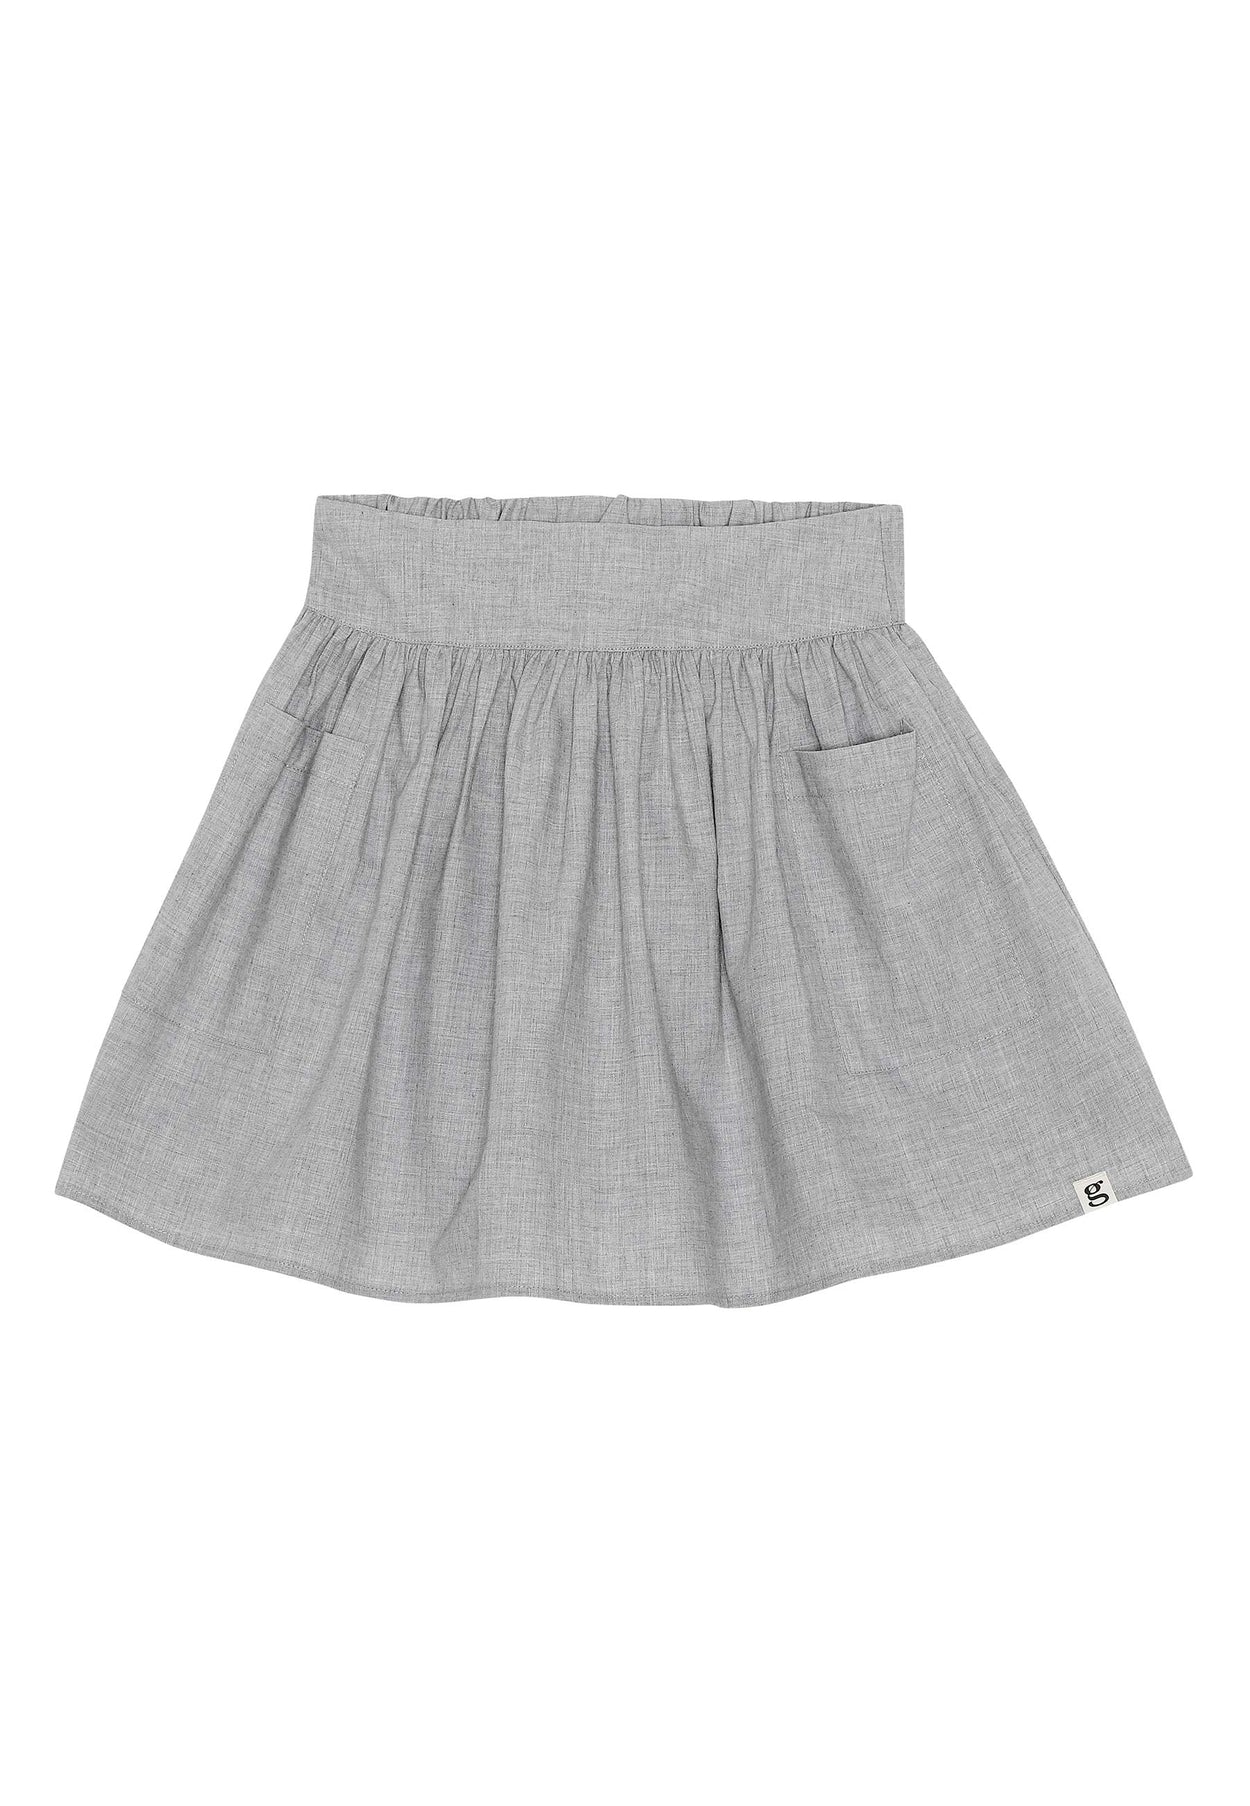 GROBUND Summa nederdelen mini - den i grå melange